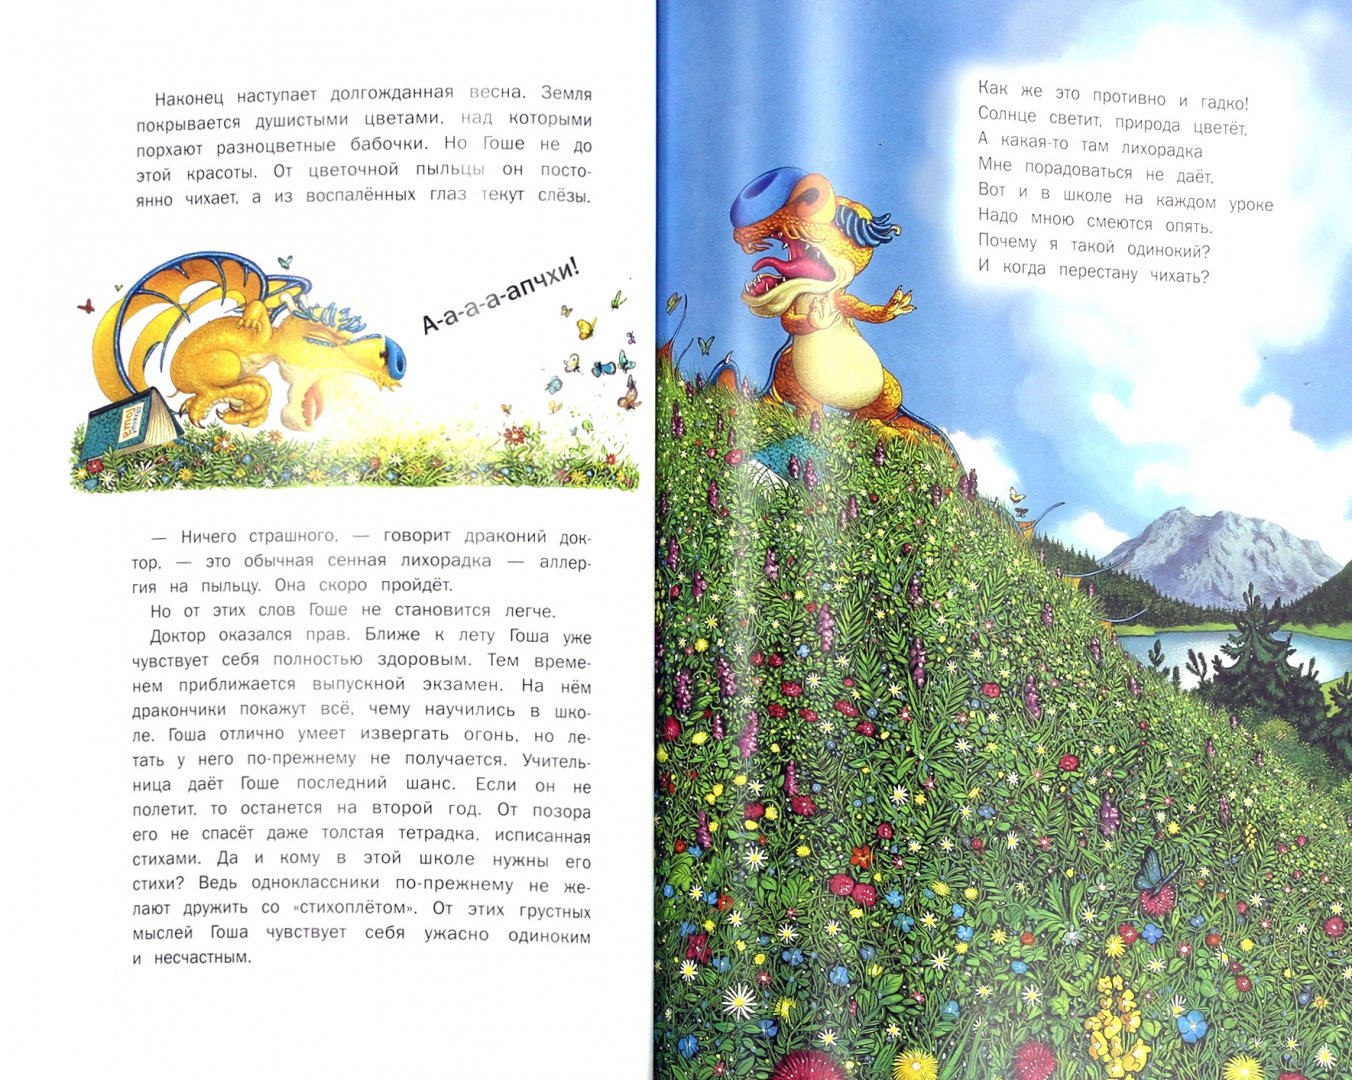 Иллюстрация 1 из 11 для Дракоша Гоша в драконской школе - Куссо, Тюрен | Лабиринт - книги. Источник: Лабиринт